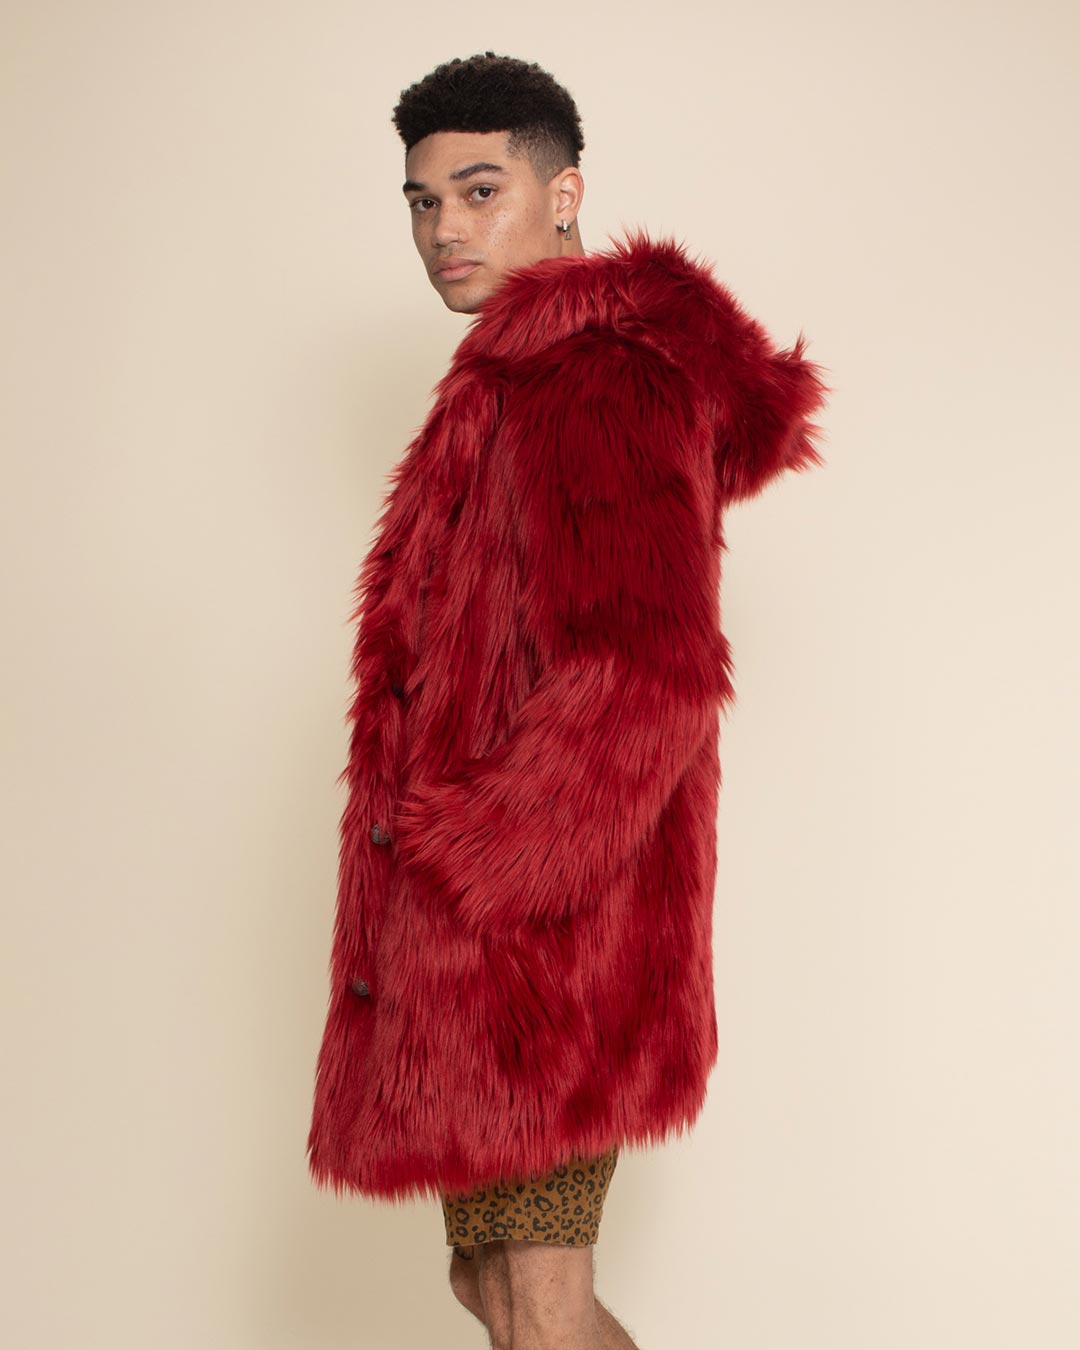 Color Fur Coat Men, Faux Fur Coat Men, C Men Fur Coat